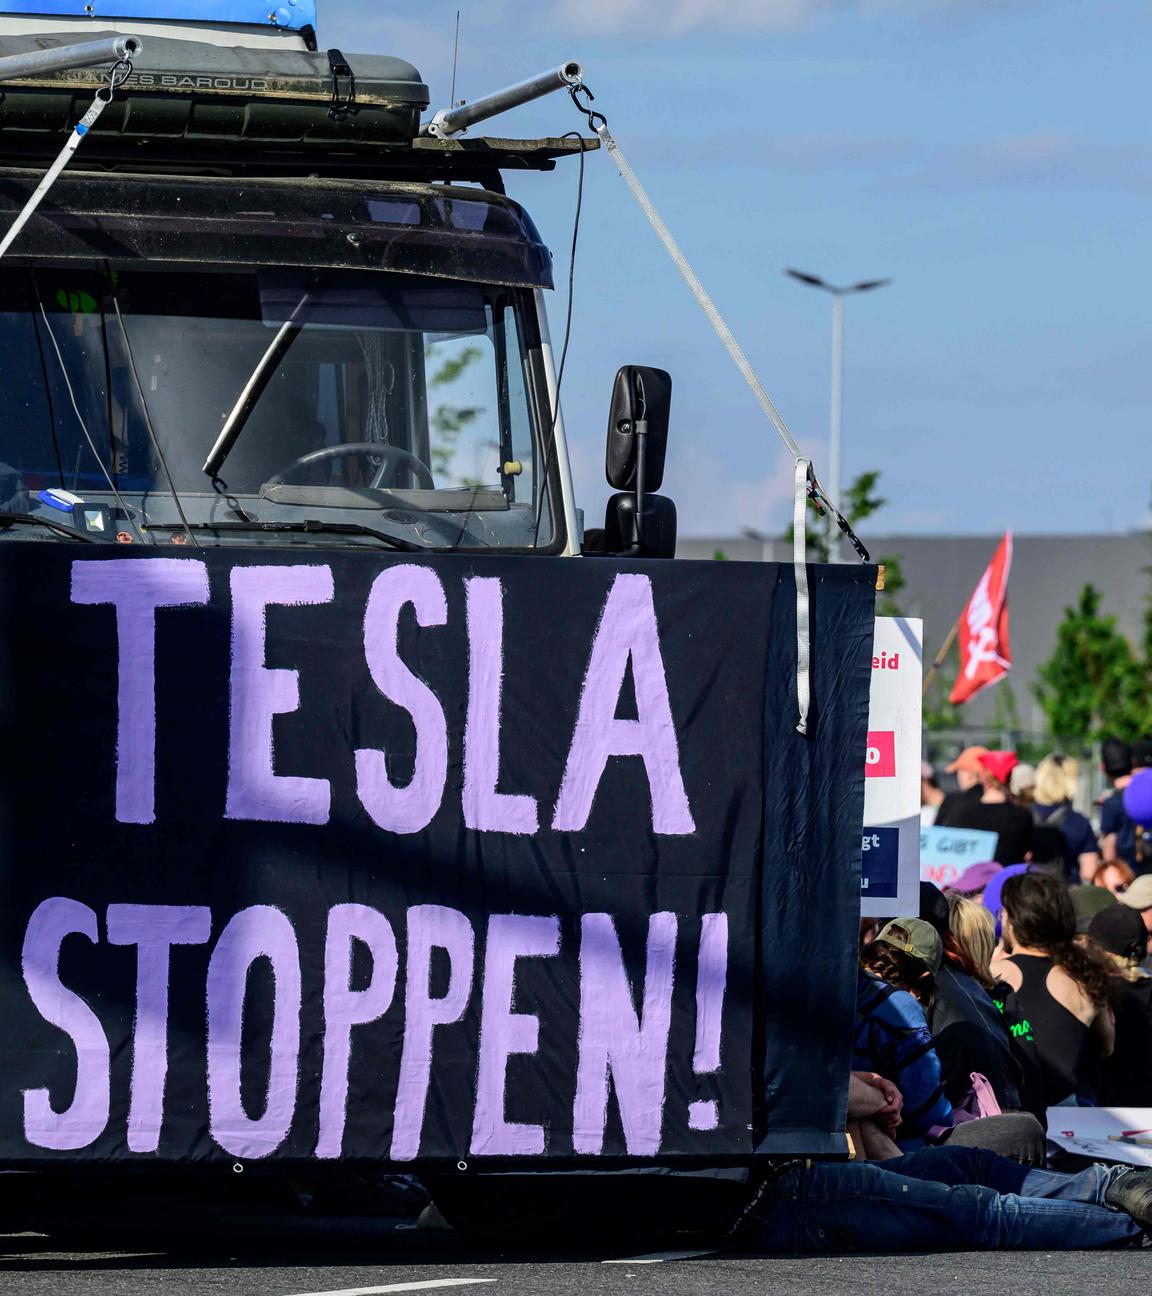 Klimaaktivisten sitzen auf dem Boden und blockieren das Tesla Gelände in Grünheide. Links ist ein Banner der Aufschrift "TESLA STOPPEN" vor einen LKW gespannt.